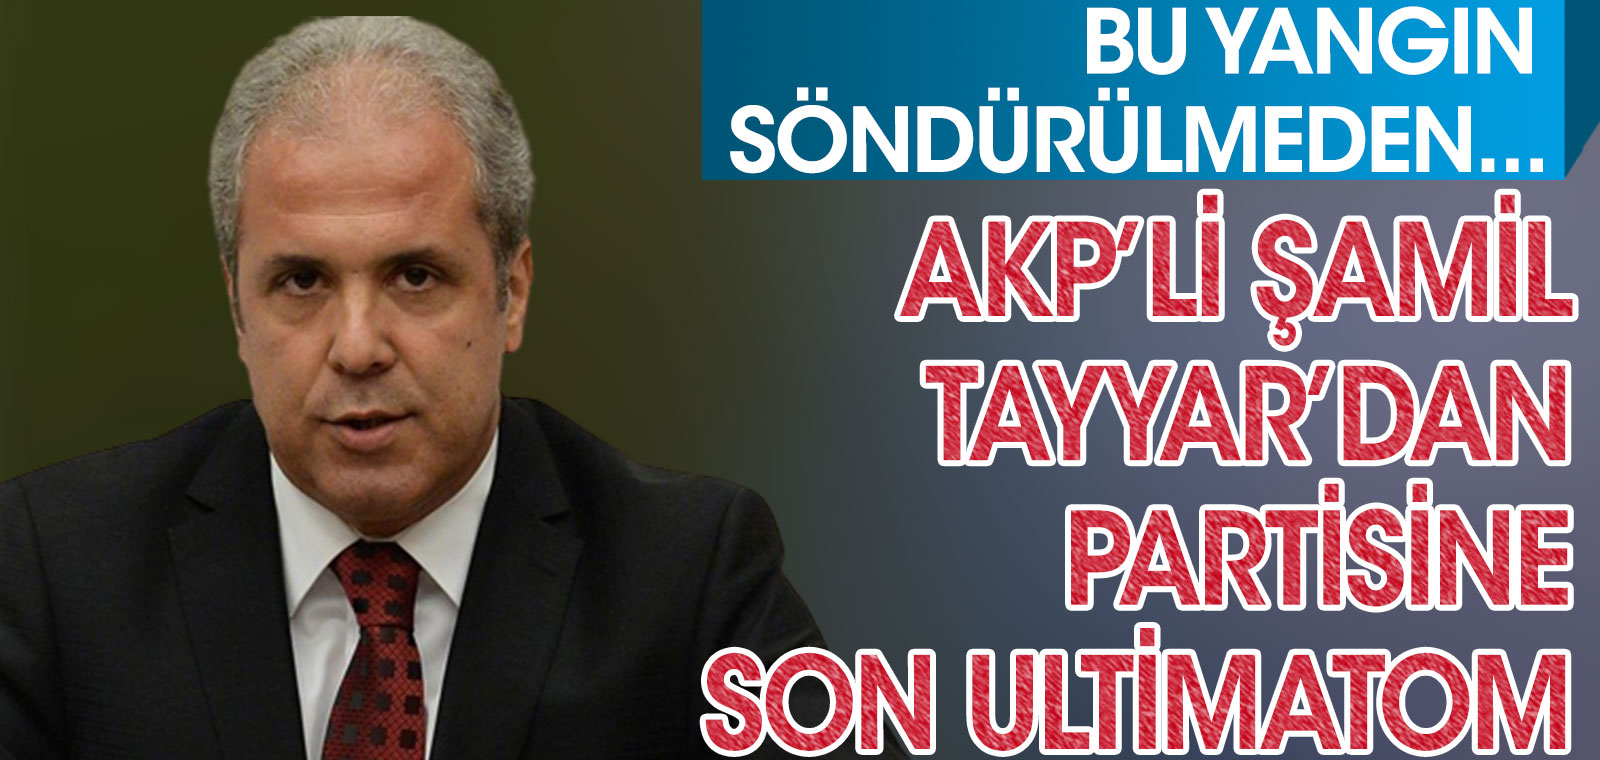 AKP'li Şamil Tayyar'dan partisine son ultimatom. Bu yangın söndürülmezse